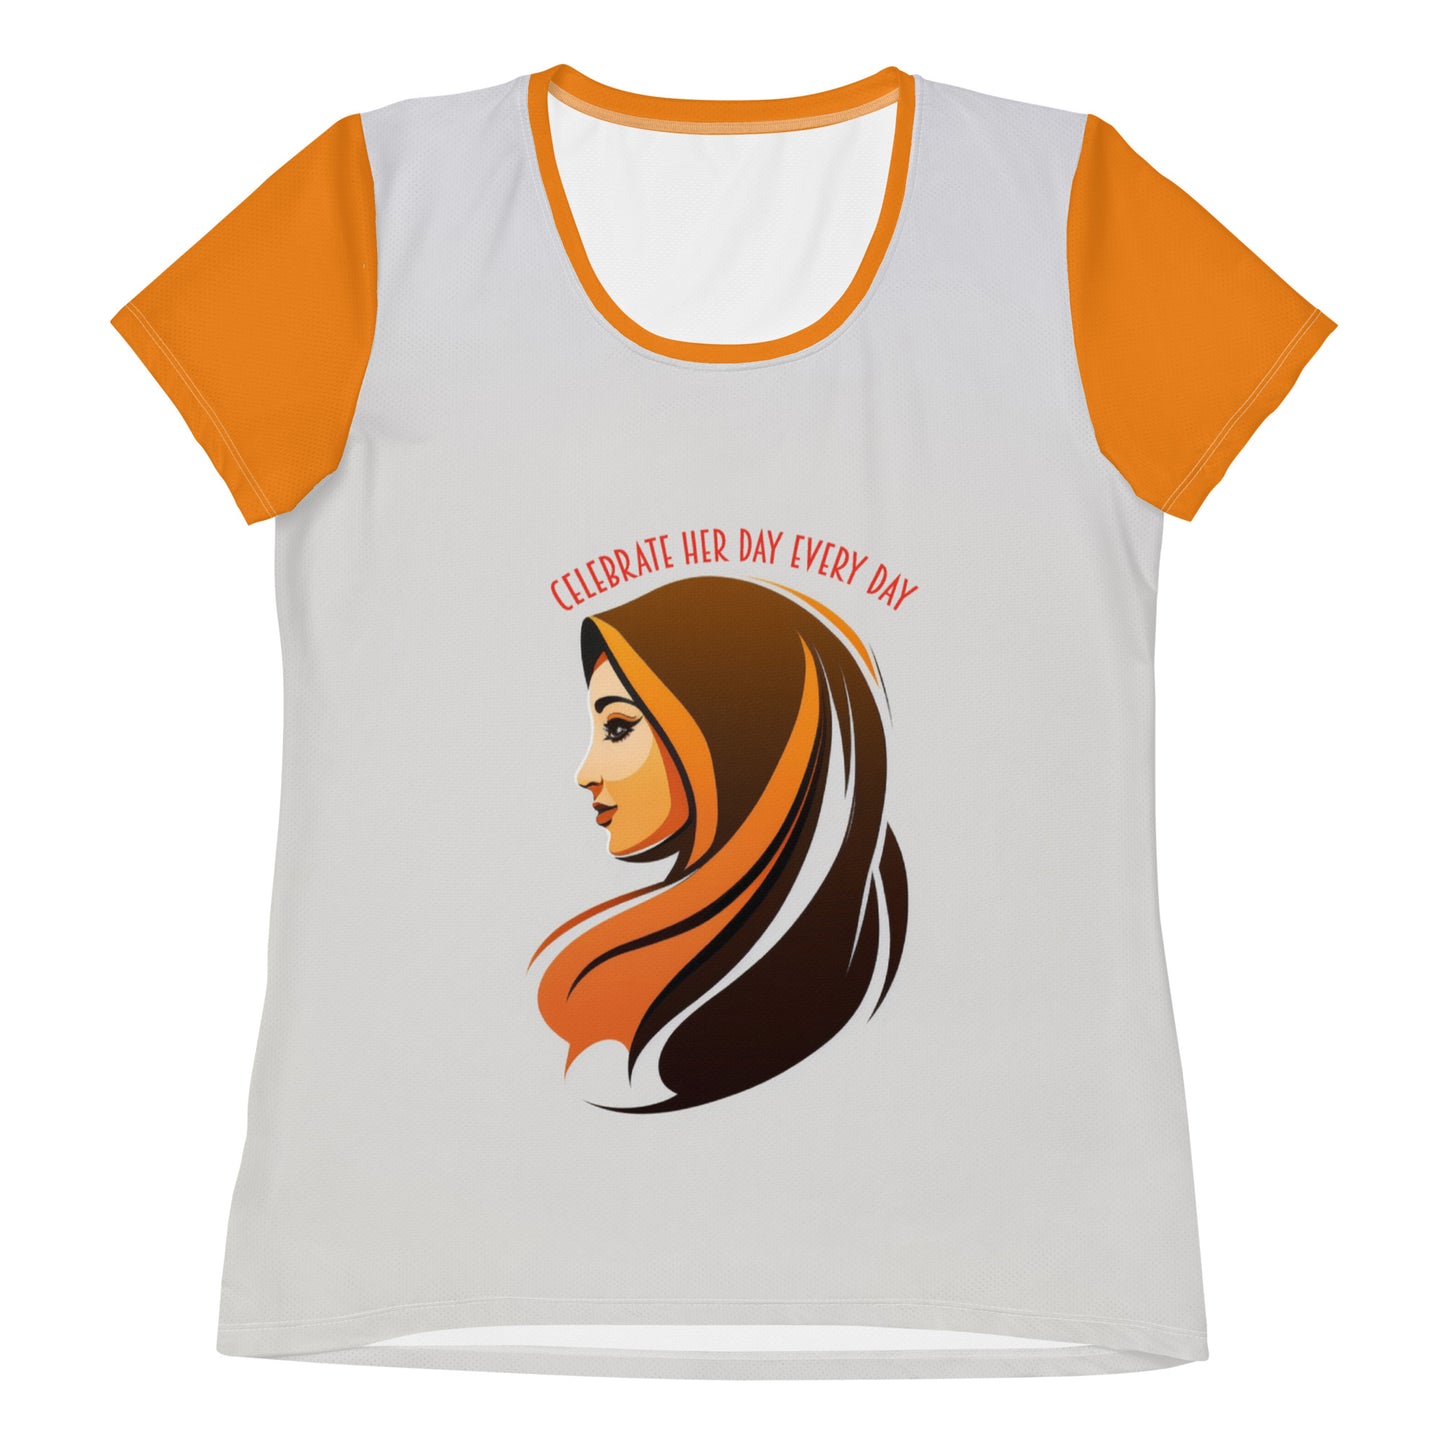 HerDay V5 - Women's Athletic T-shirt